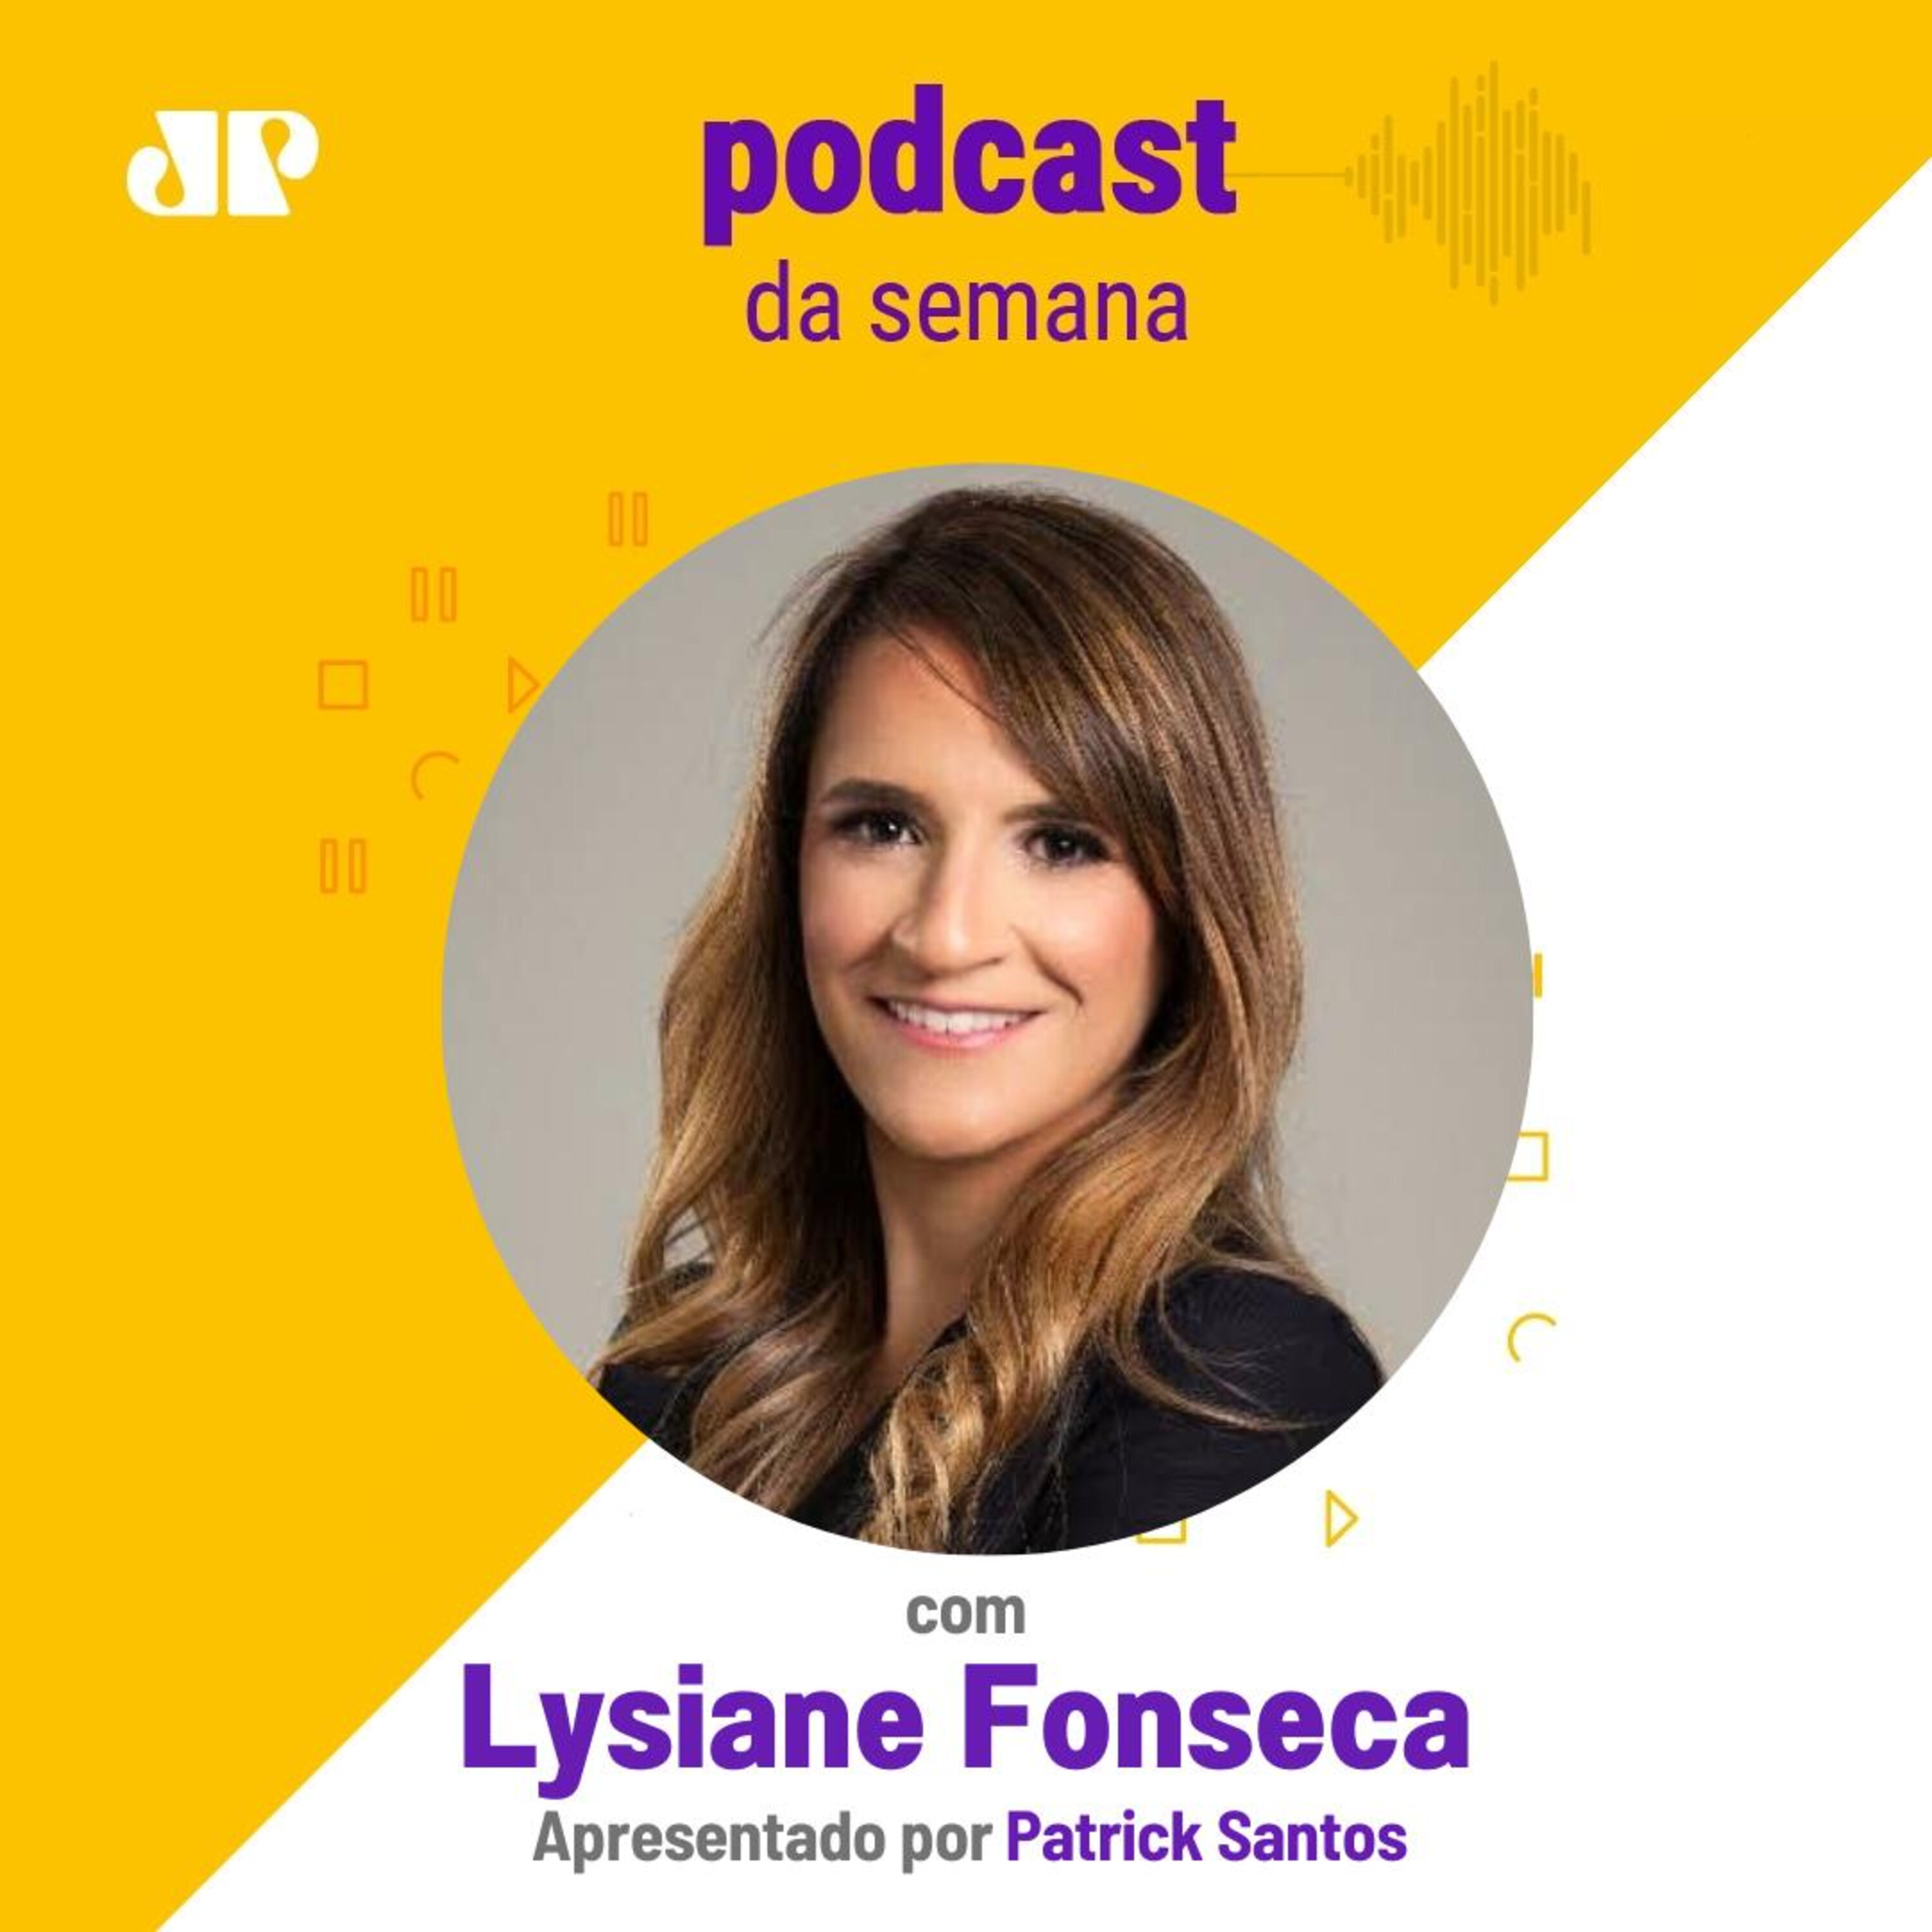 Lysiane Fonseca - "Nós criamos a nossa própria realidade"